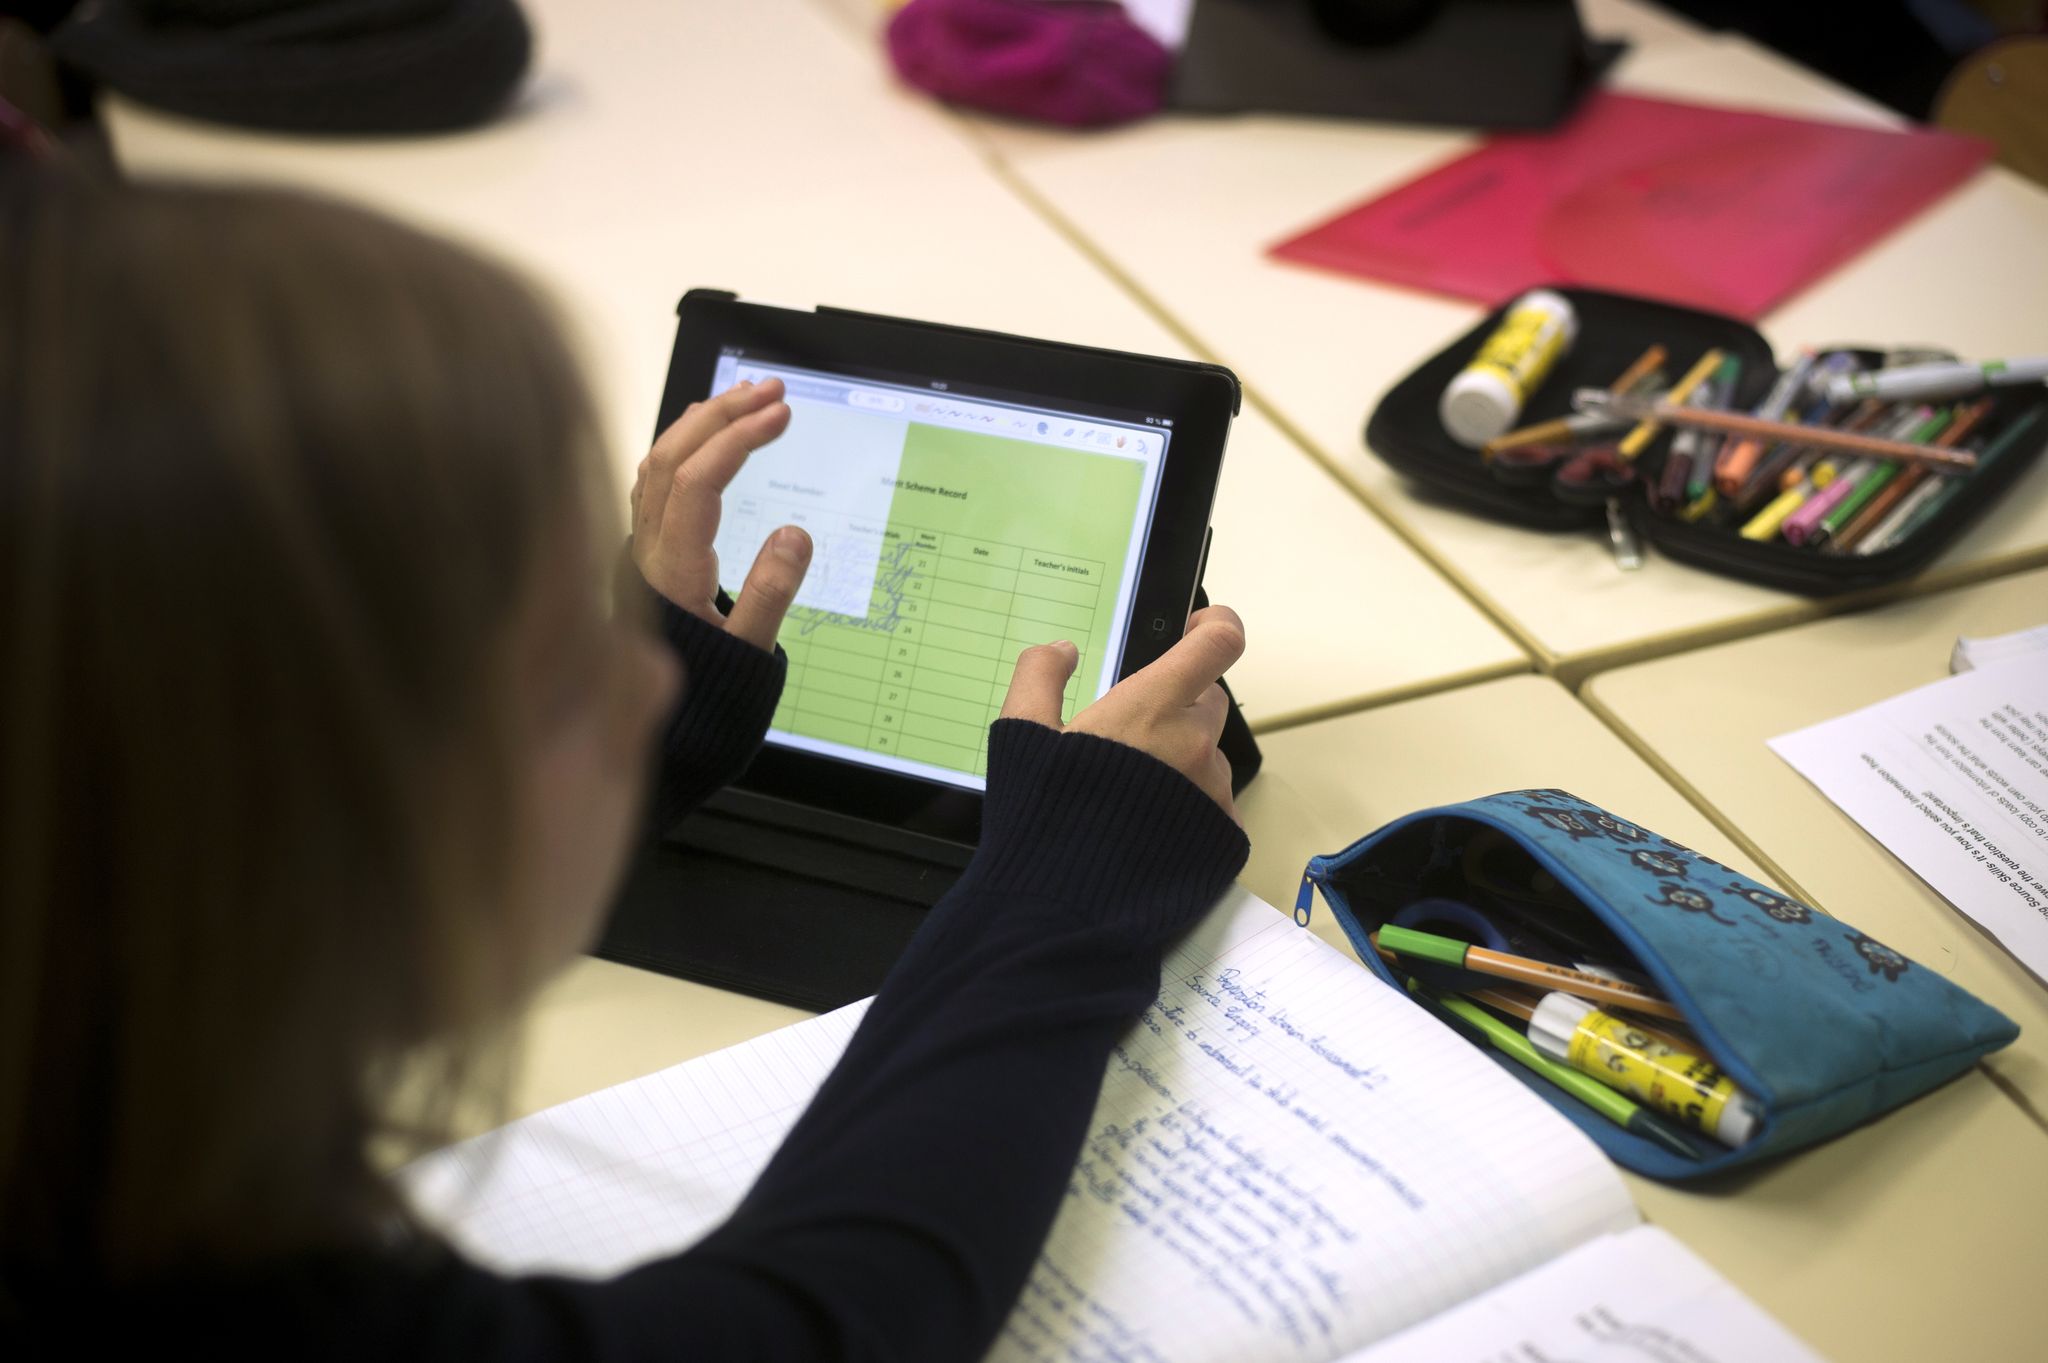 La tablette numérique et notre conception de l'école